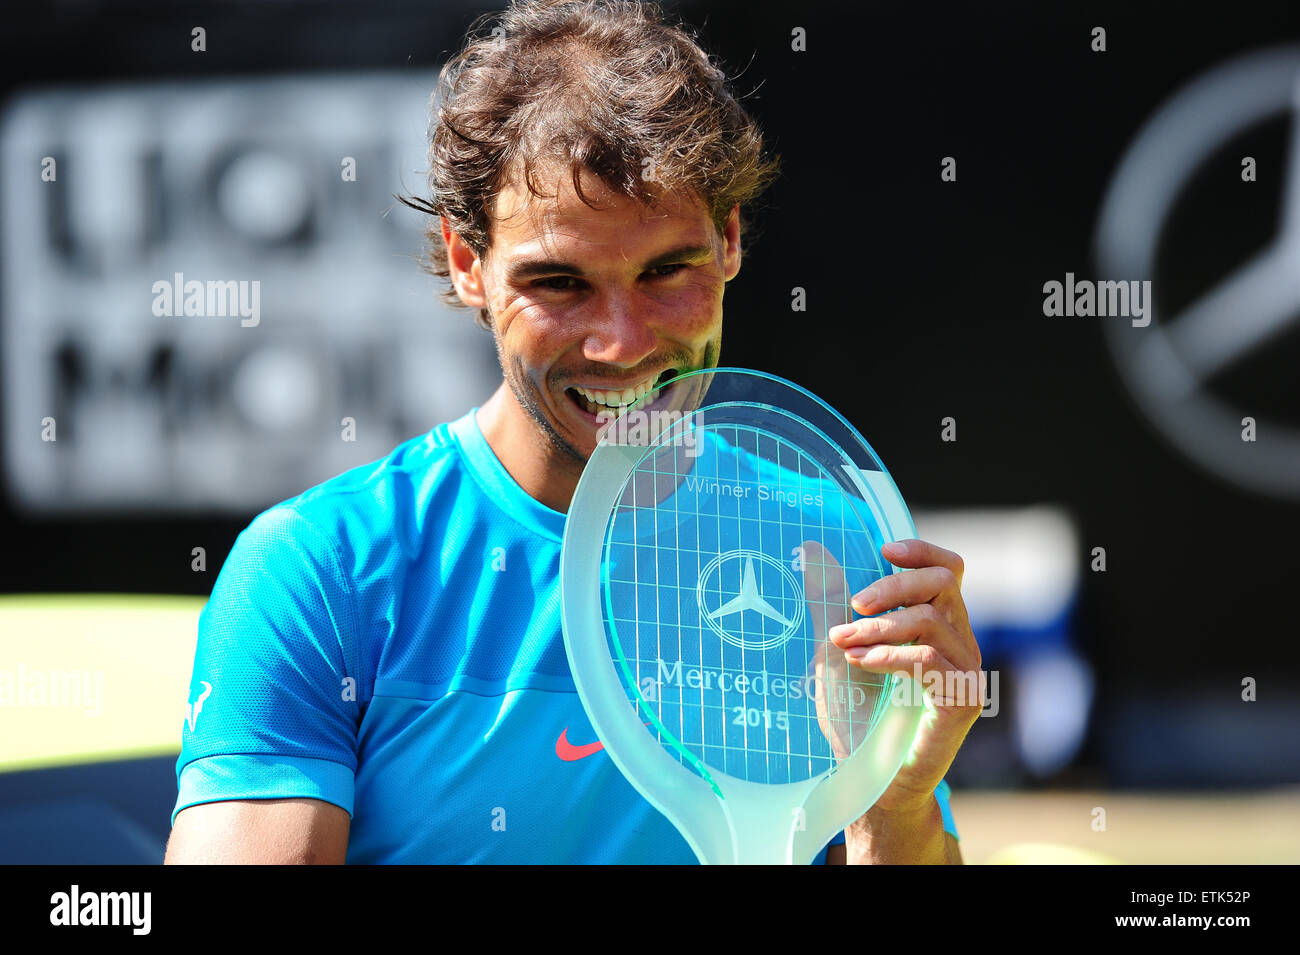 Stuttgart, Germania. 14 Giugno, 2015. Mercedes Cup campione Rafael Nadal con il trofeo di Stoccarda. Foto: Miroslav Dakov/ Alamy Live News Foto Stock